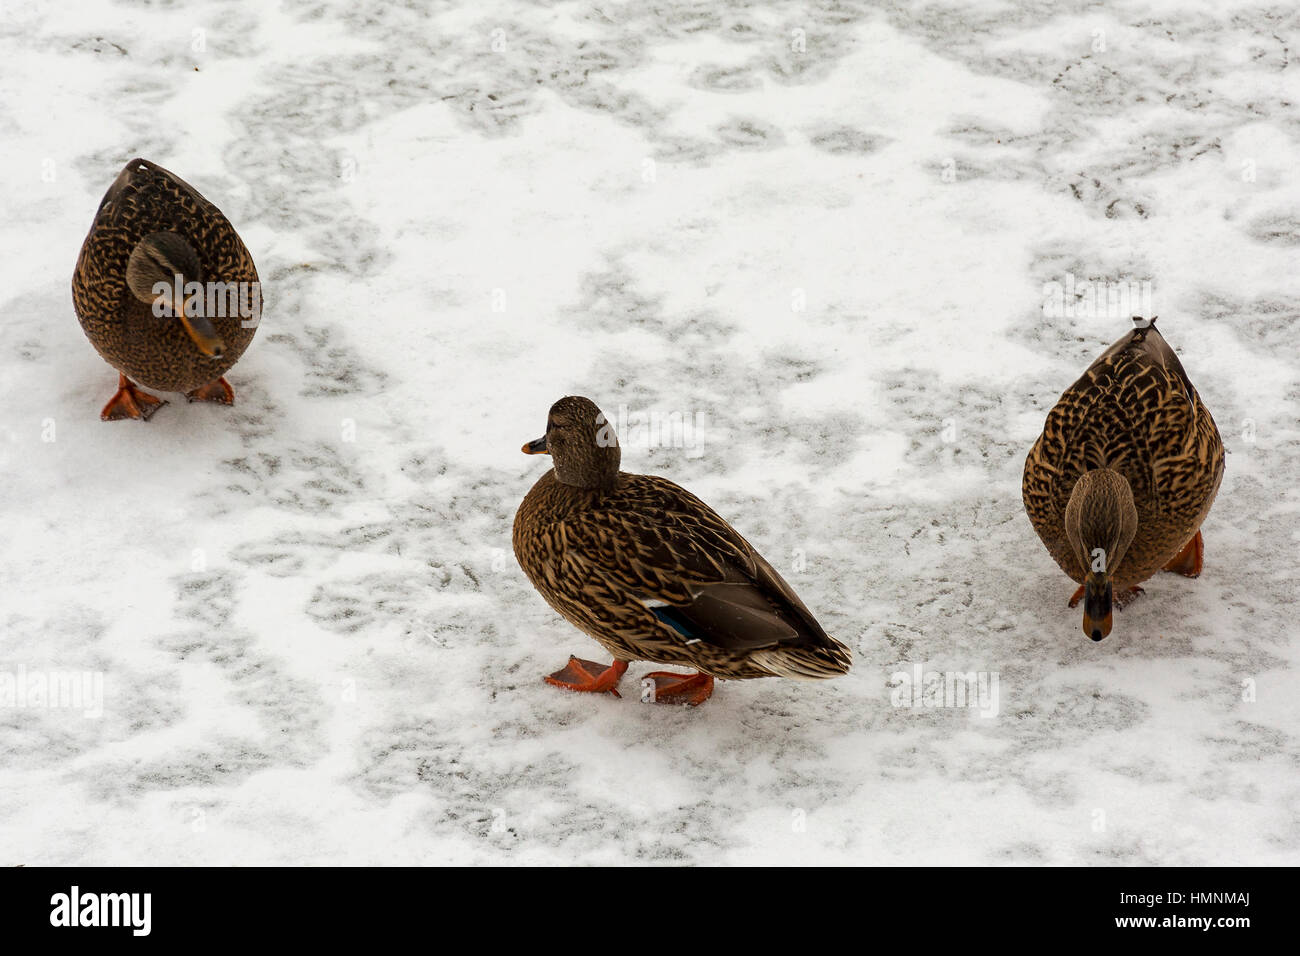 Auf dem weißen Schnee, es gibt drei wilden etki auf der Suche nach Essen Stockfoto